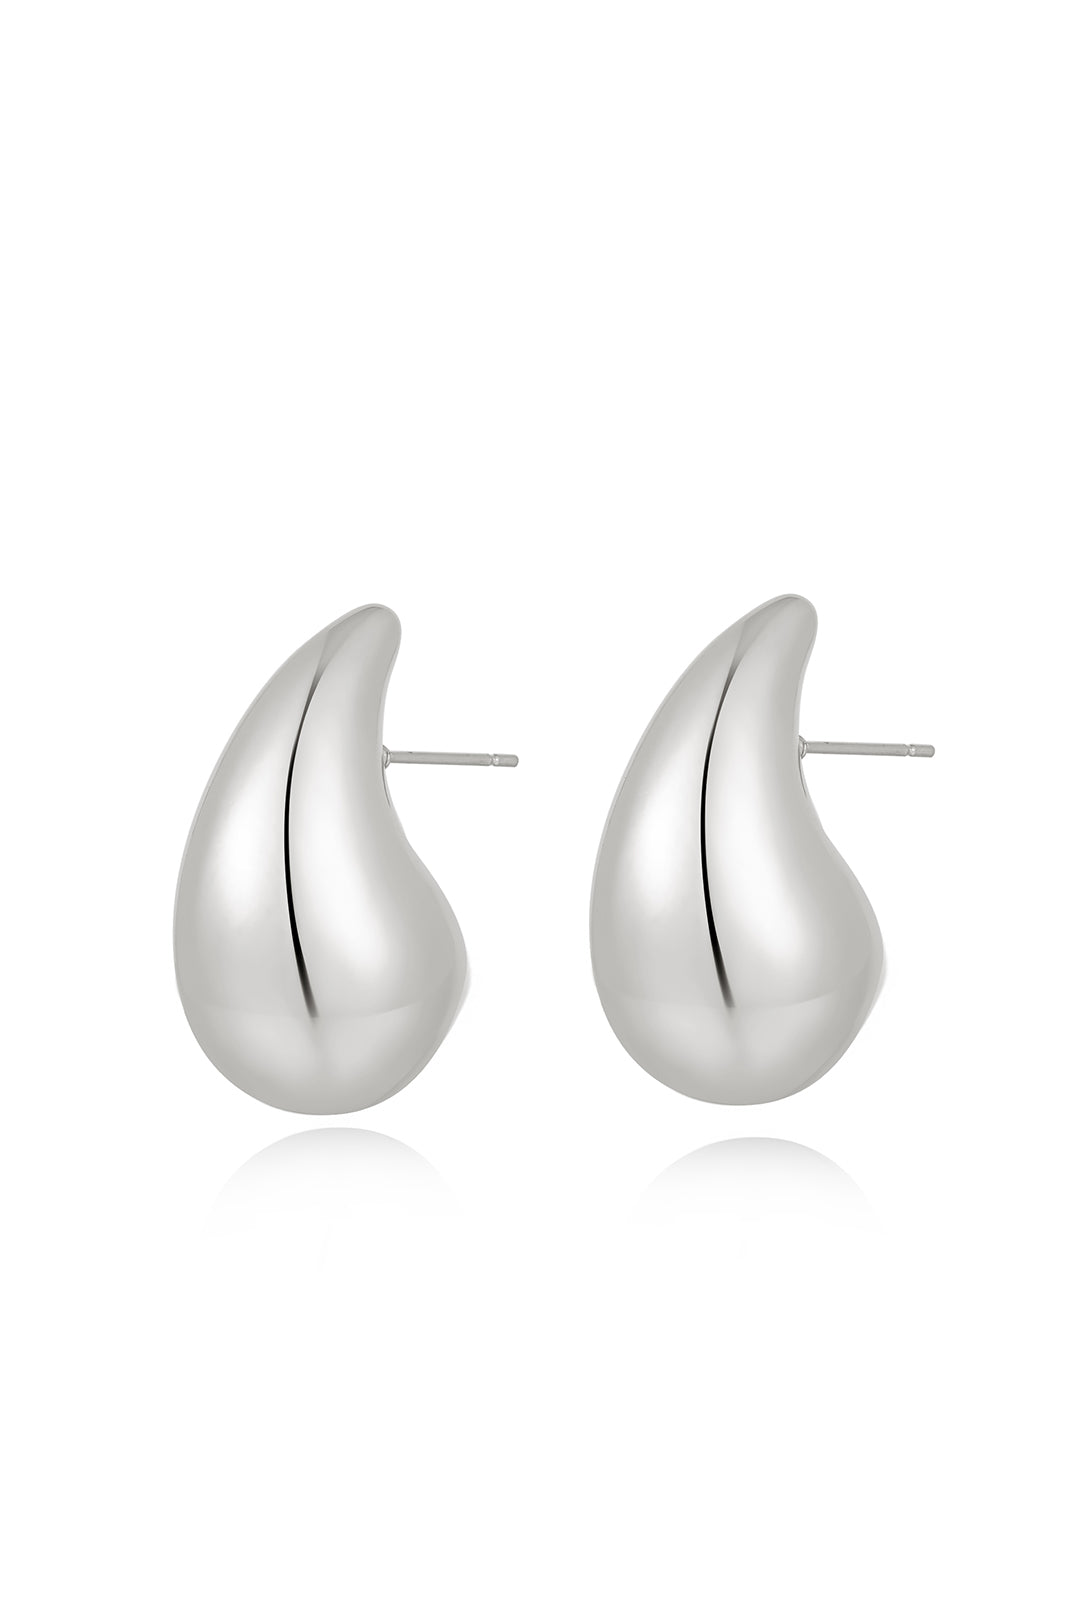 Luv Aj Gia Teardrop Hoop Earrings in Polished Rhodium Plated